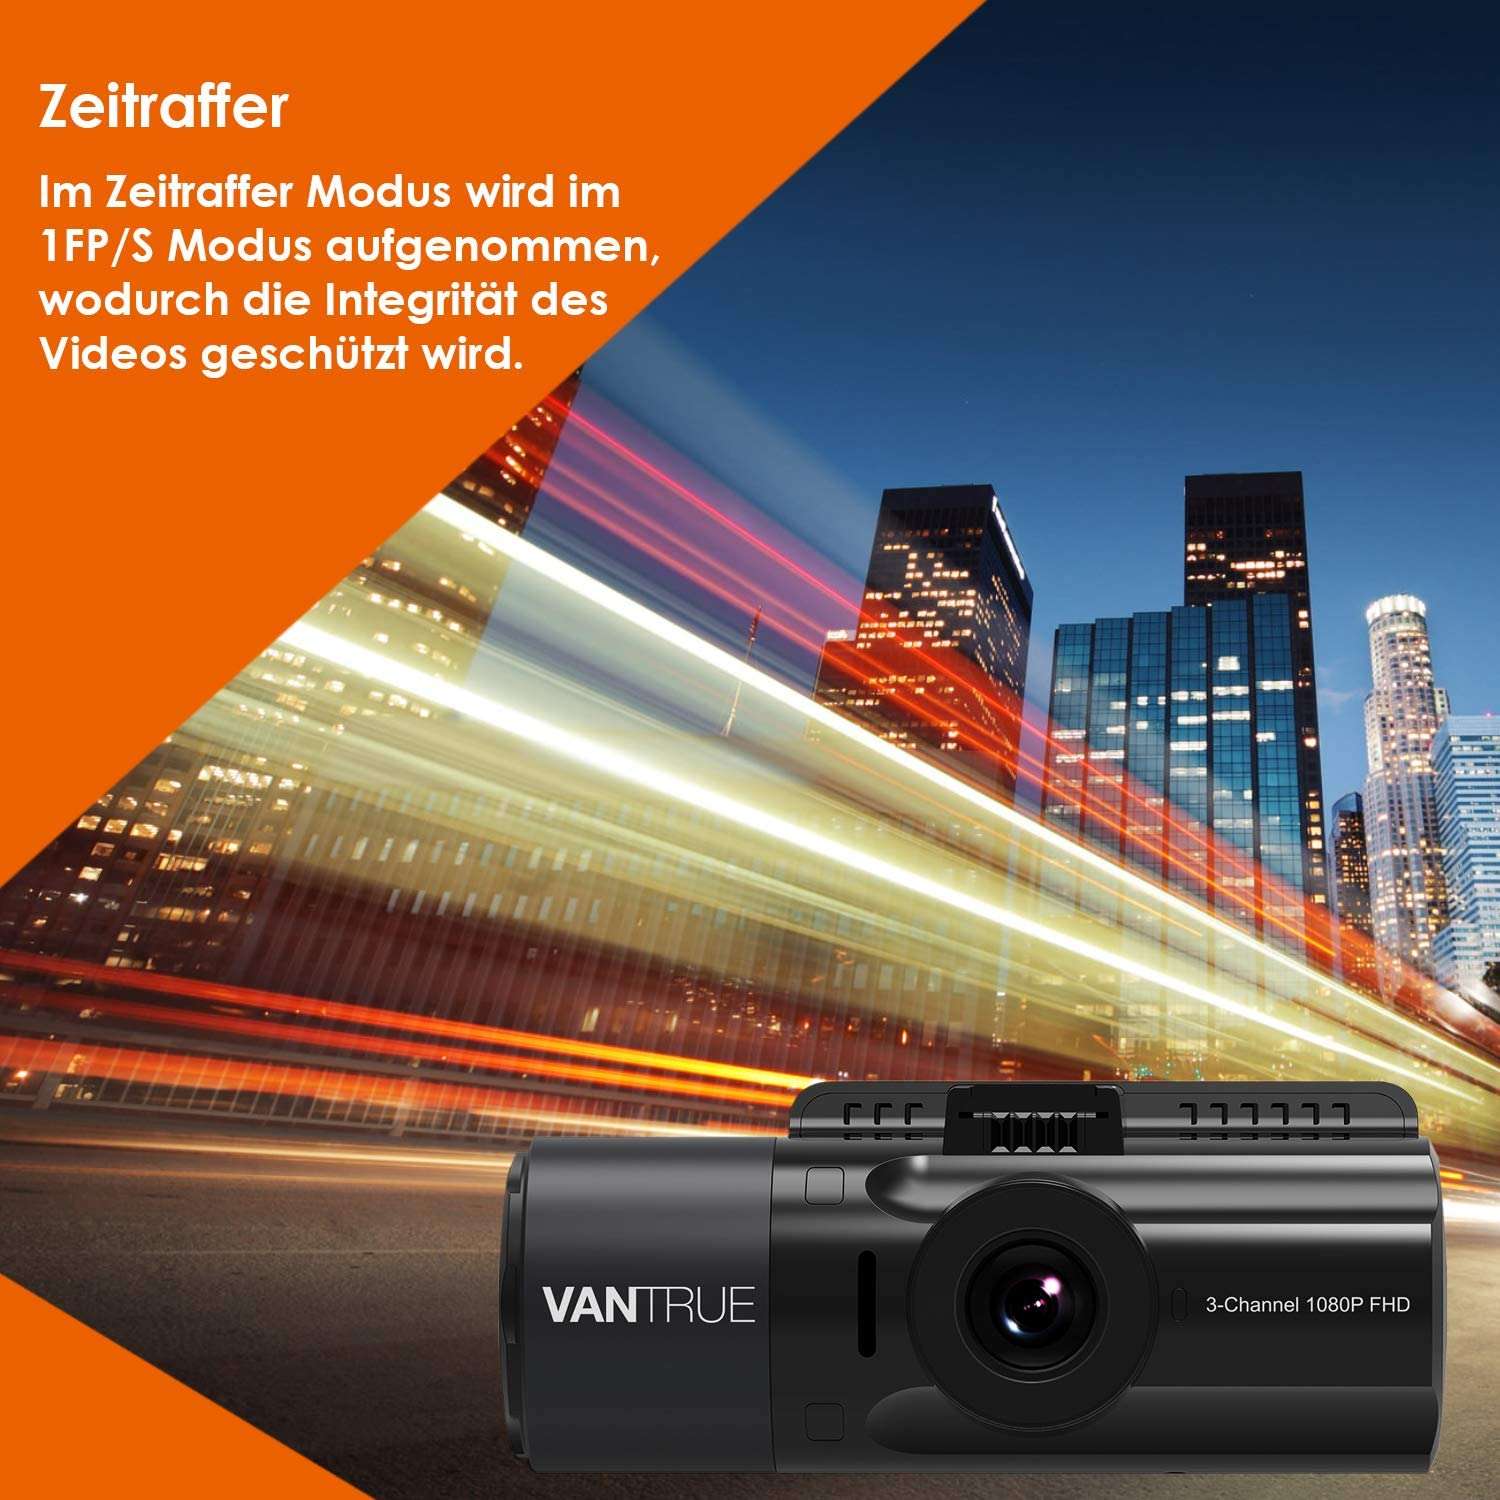 Vantrue N4 3 Channel 1440p Dashcam | mit GPS & Kit & SD - Bundle